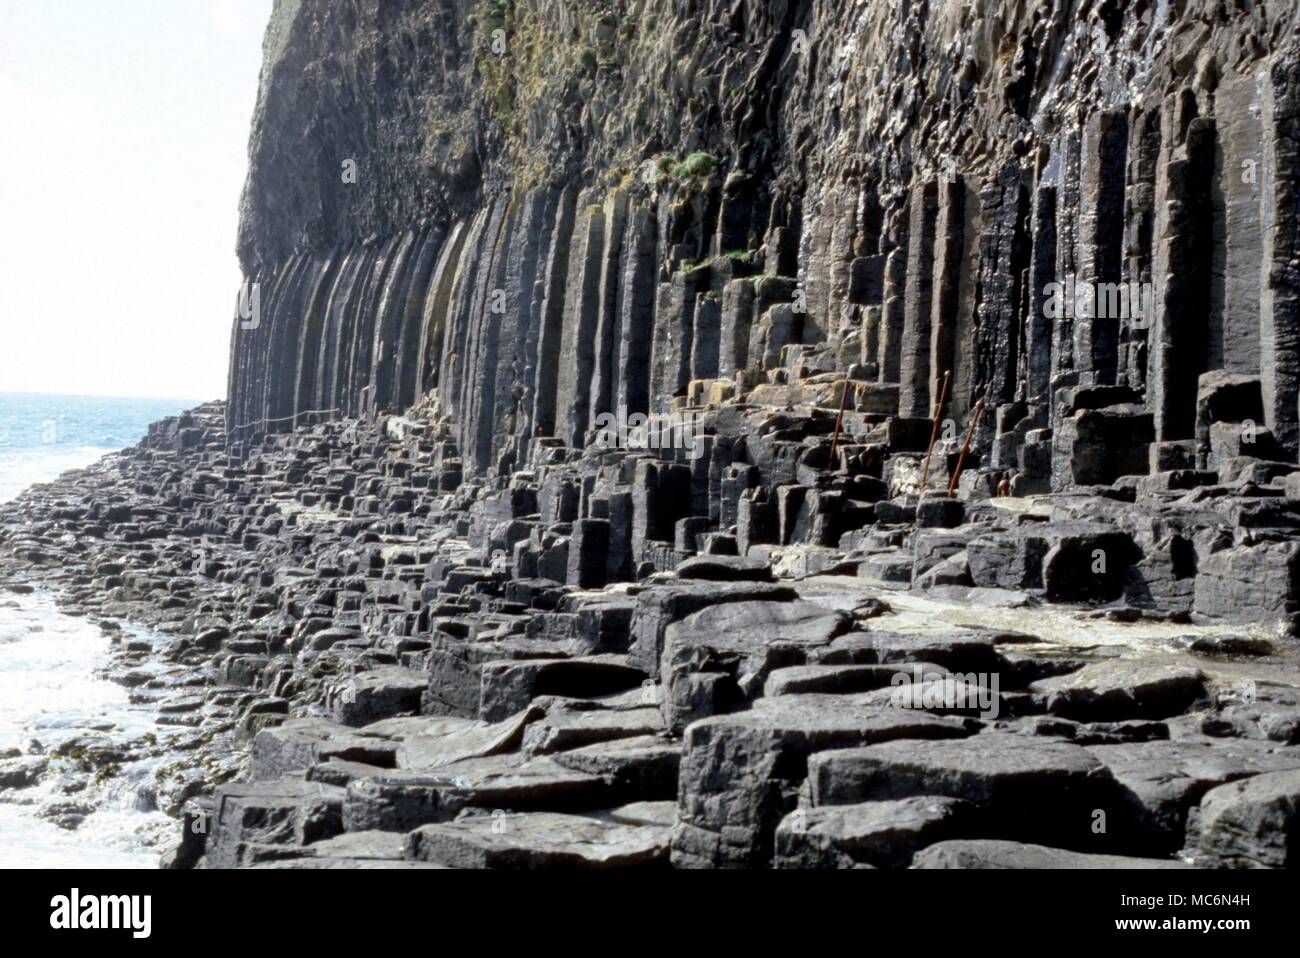 La Staffa columnas basálticas hexagonales que forman los acantilados de la isla de Staffa y que a menudo se cree que han esculpido por gigantes o realizadas por los antiguos magos Foto de stock